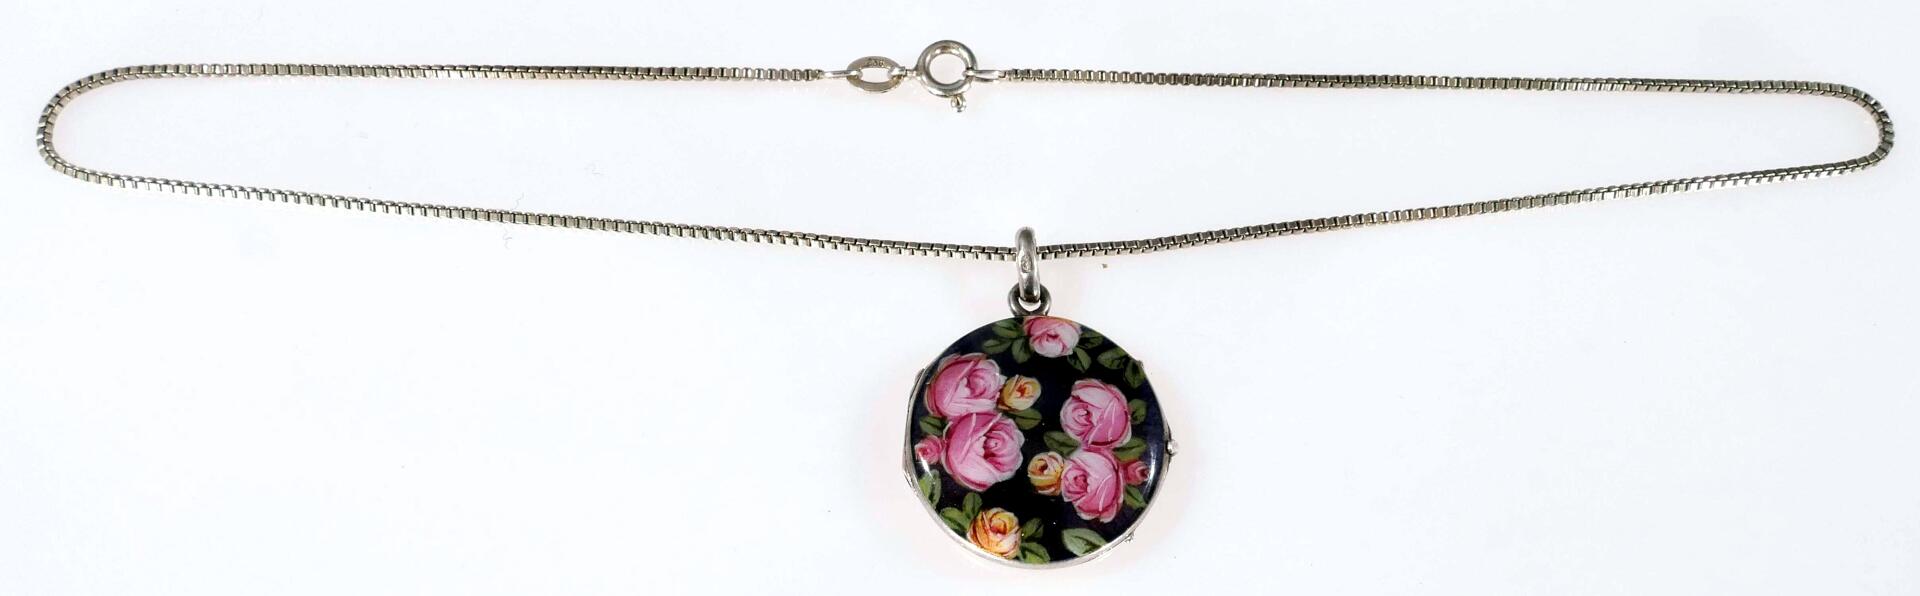 Silberne Halskette mit emailliertem Medaillon-Kettenanhänger, vorderseitig mit "Rosenblüten"-Dekor, - Image 2 of 7